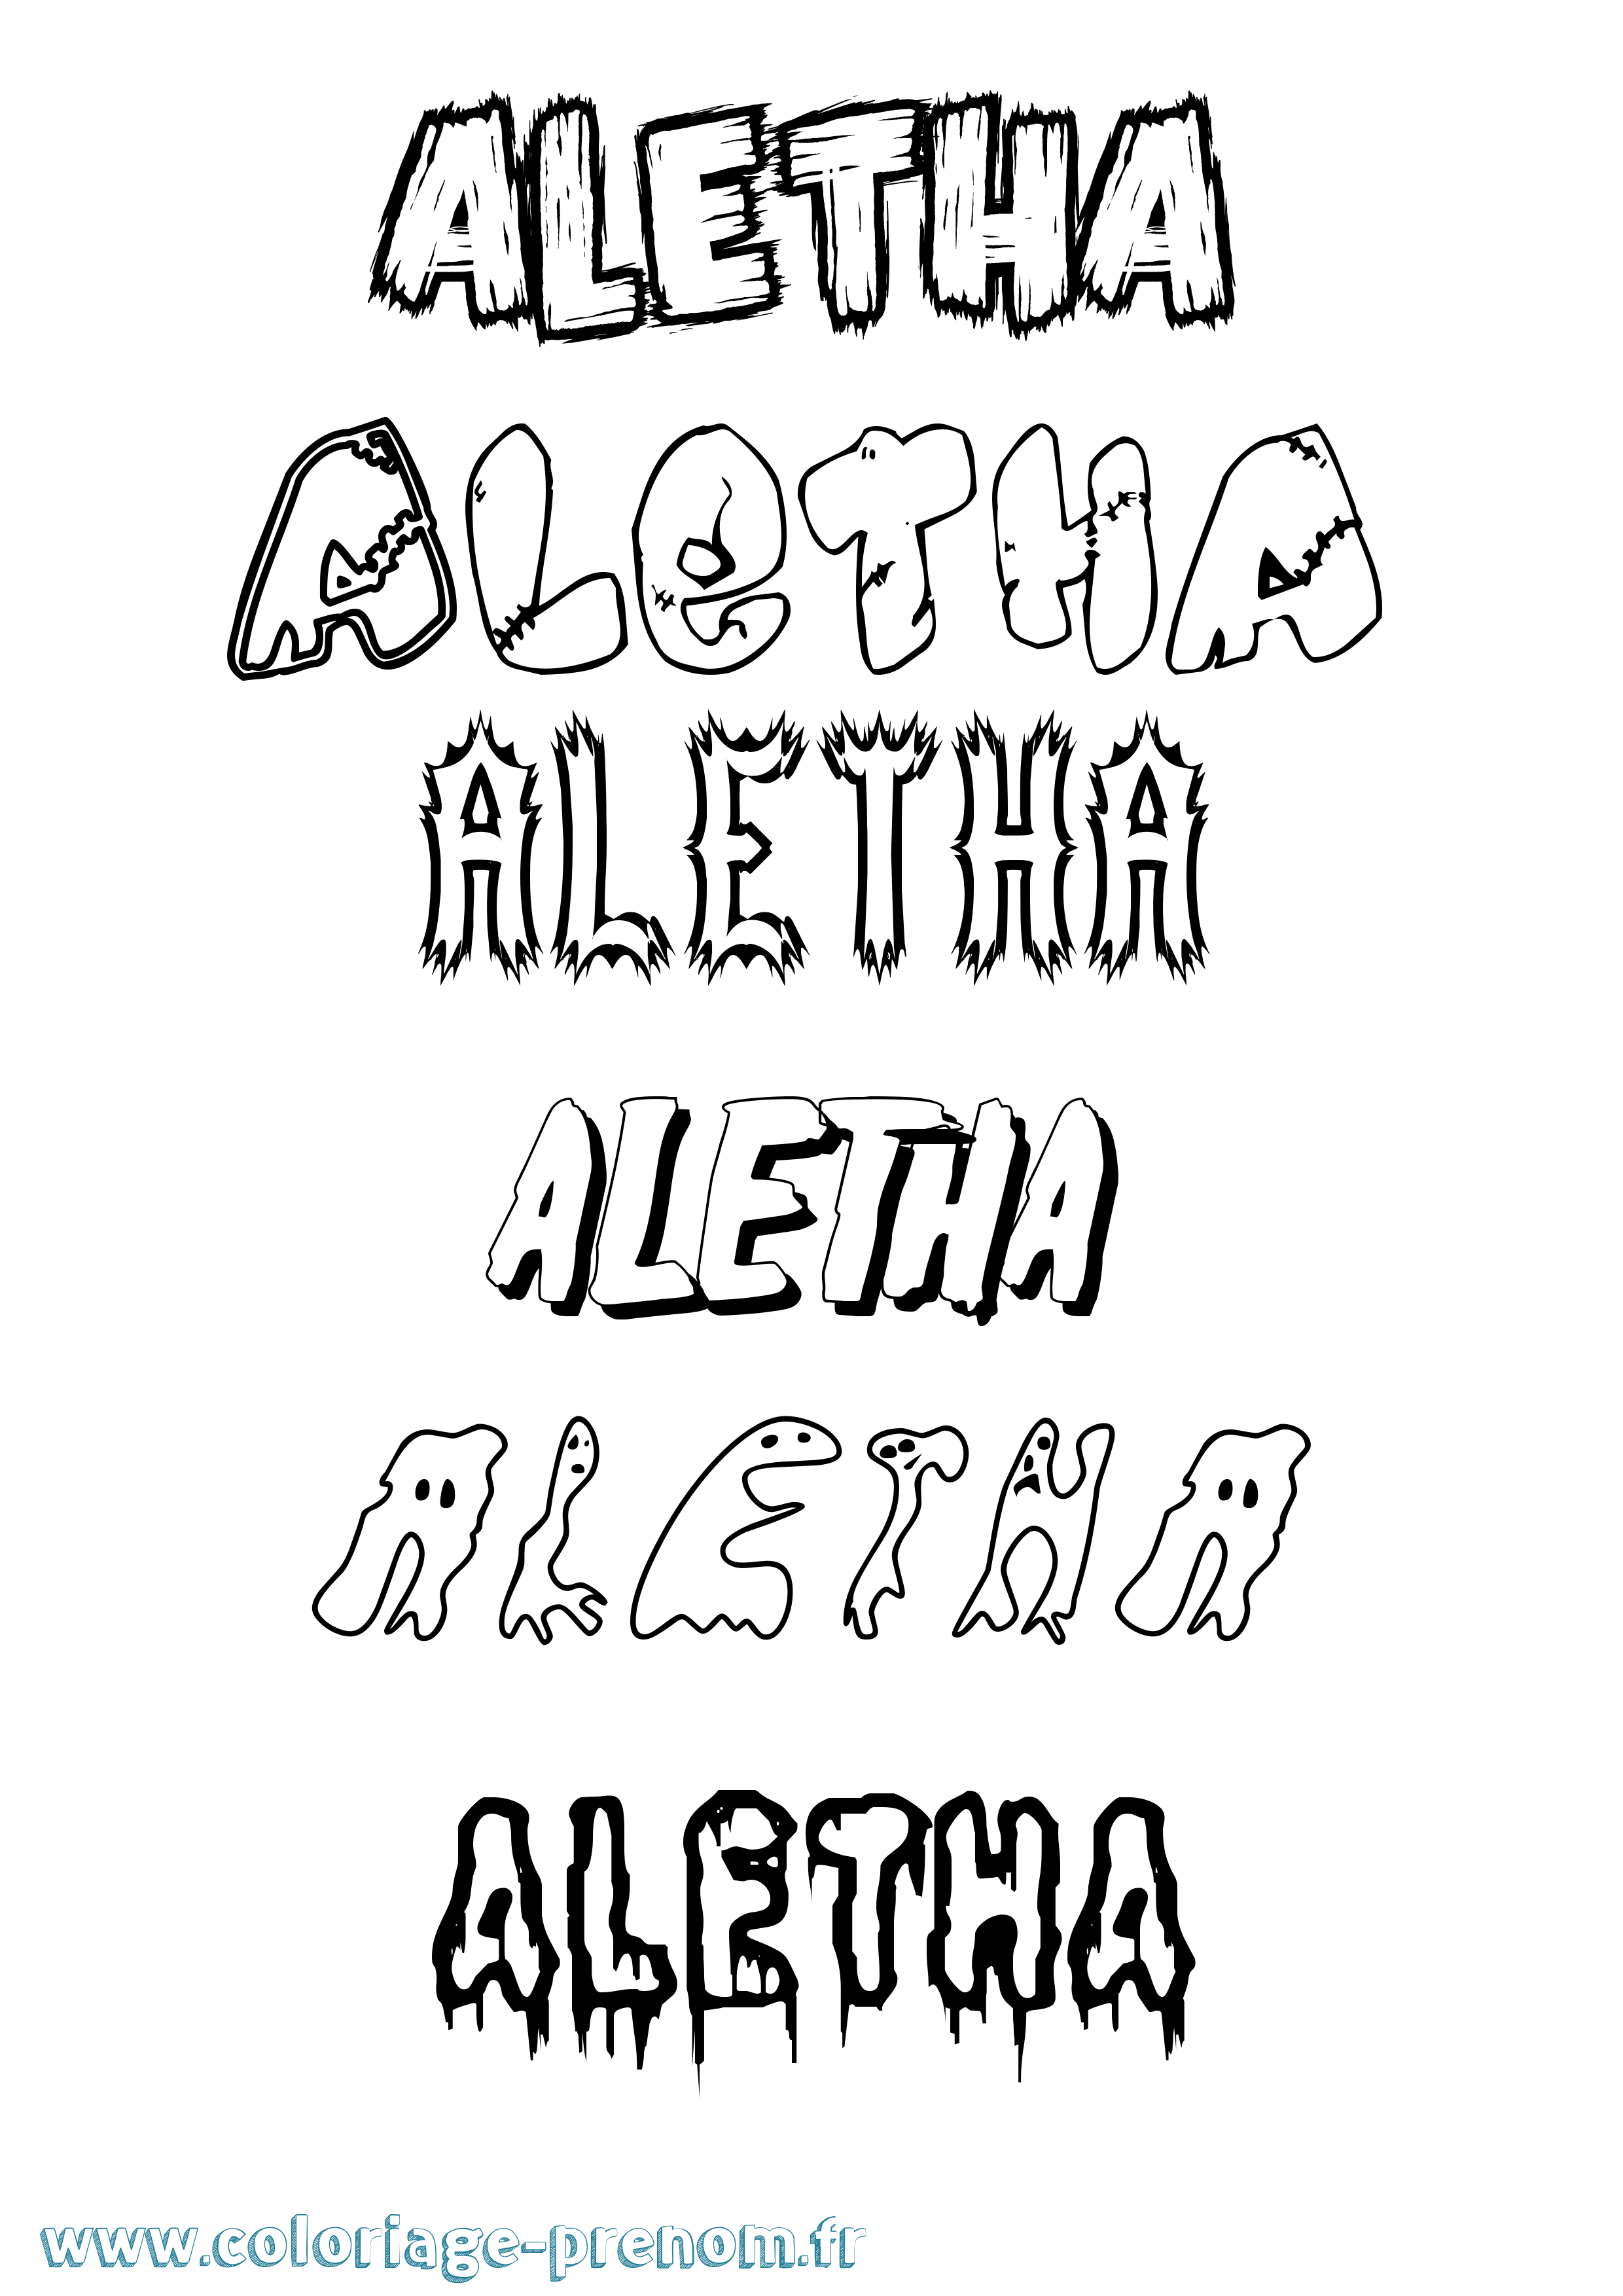 Coloriage prénom Aletha Frisson